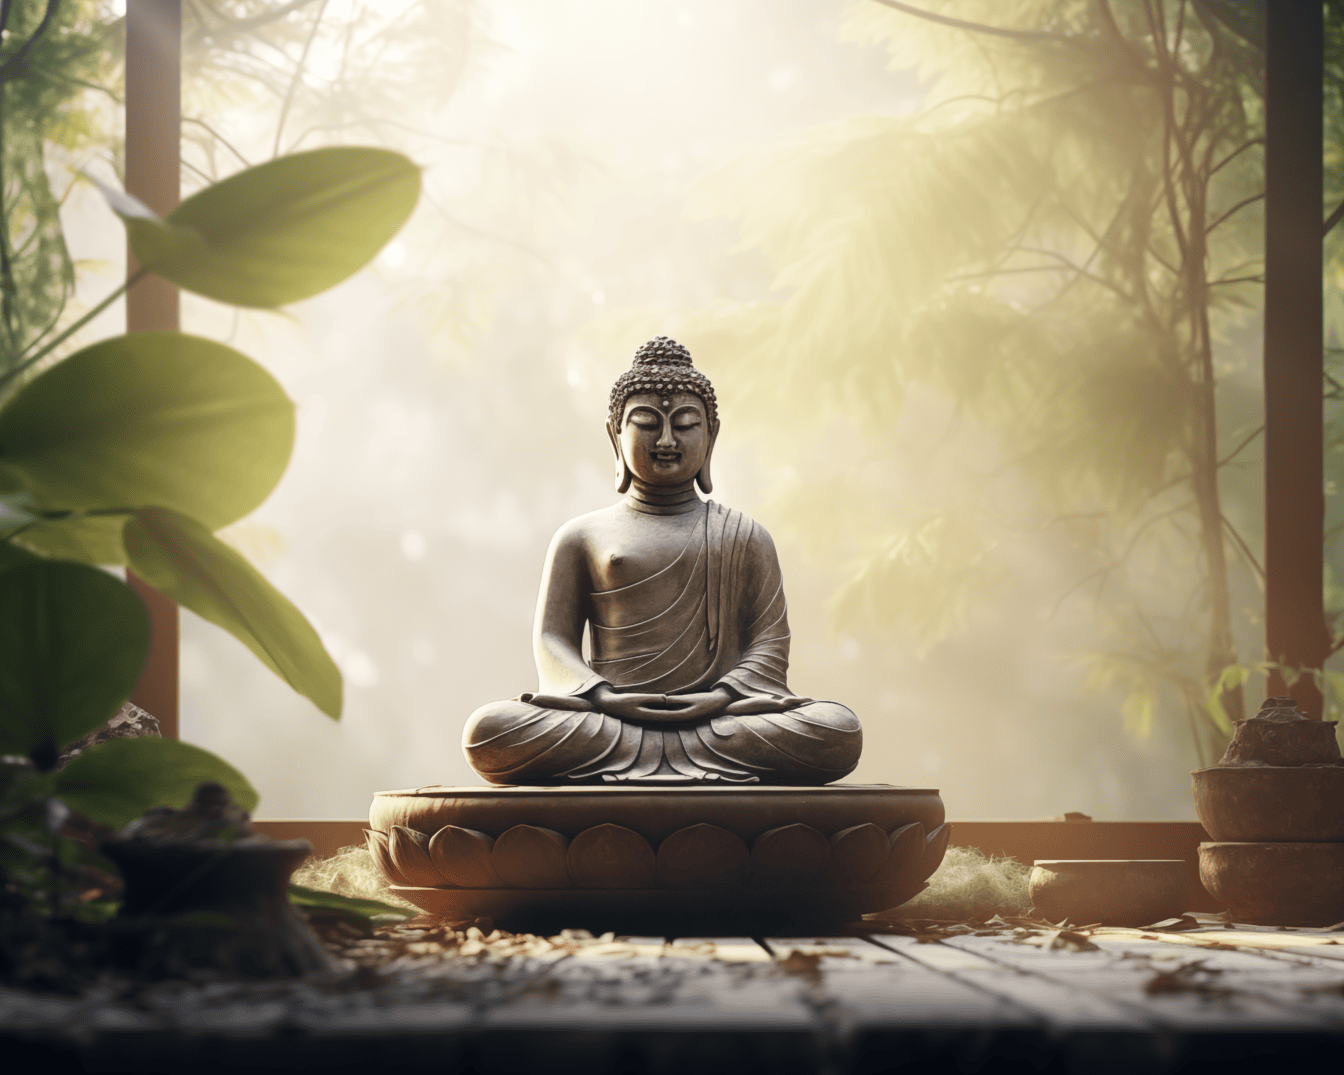 Staty av Buddha som sitter i lotusställningen och utövar zenmeditation på verandan med mjuka solstrålar i bakgrunden